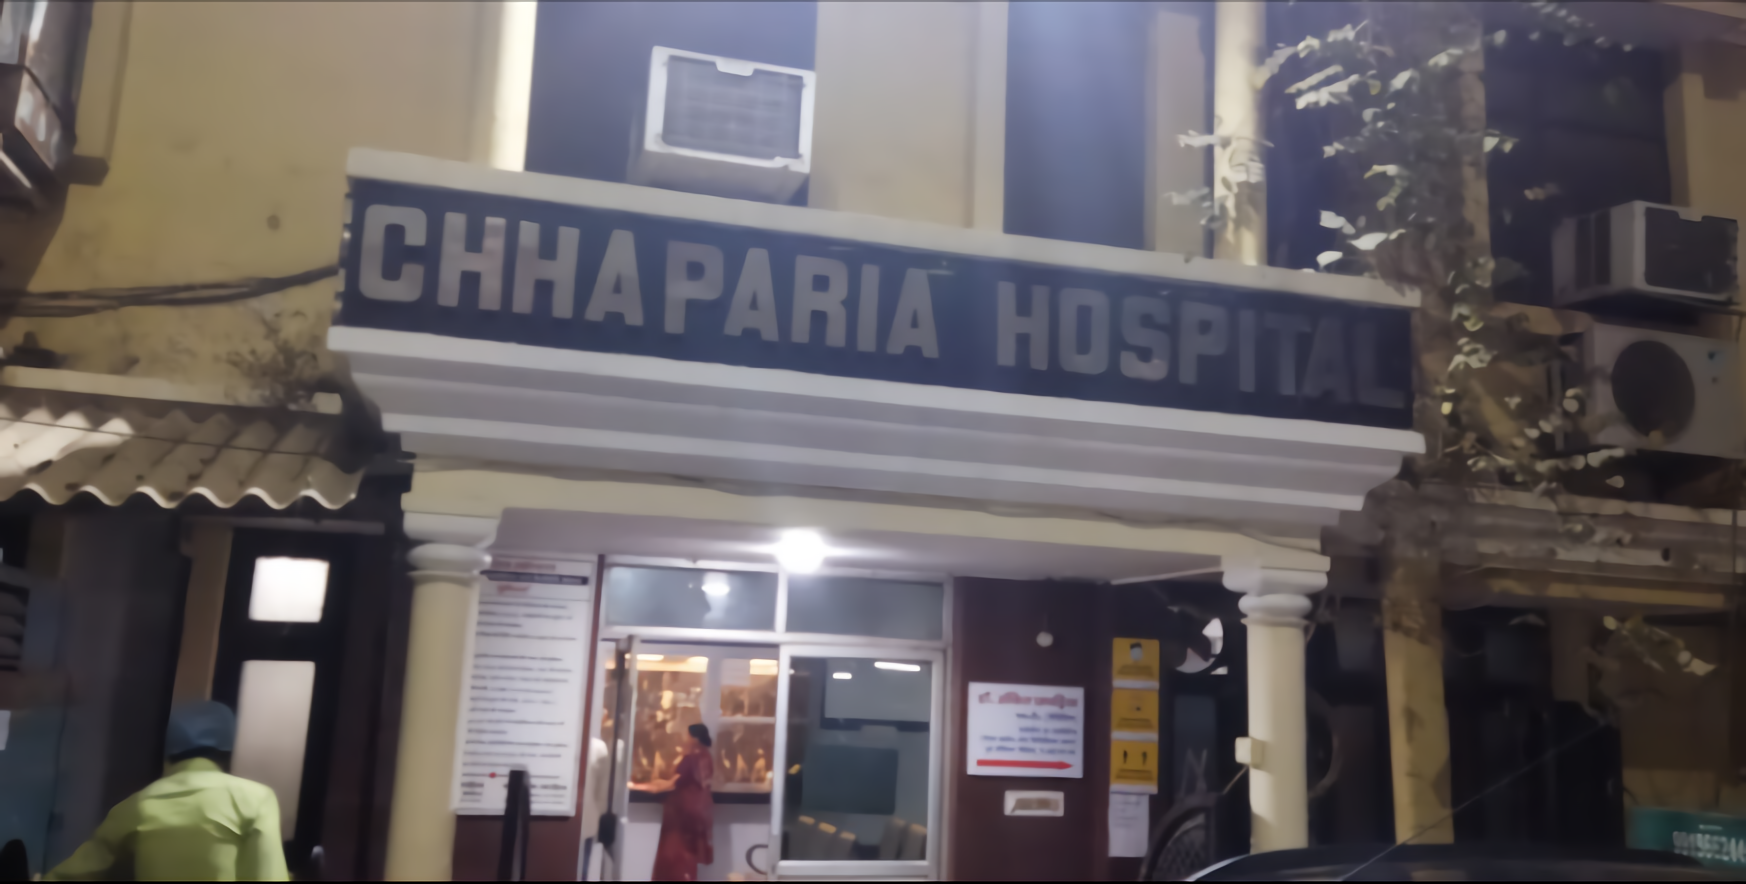 Chhaparia Hospital